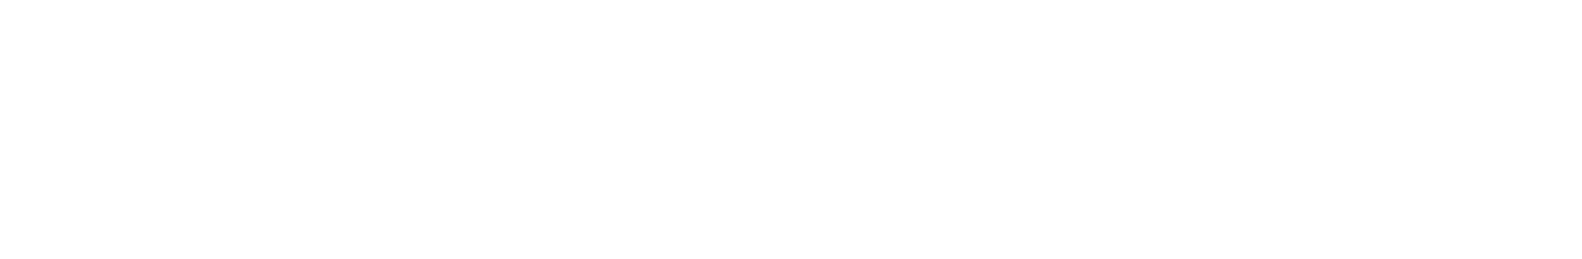 Japan Post Bank
 logo large for dark backgrounds (transparent PNG)